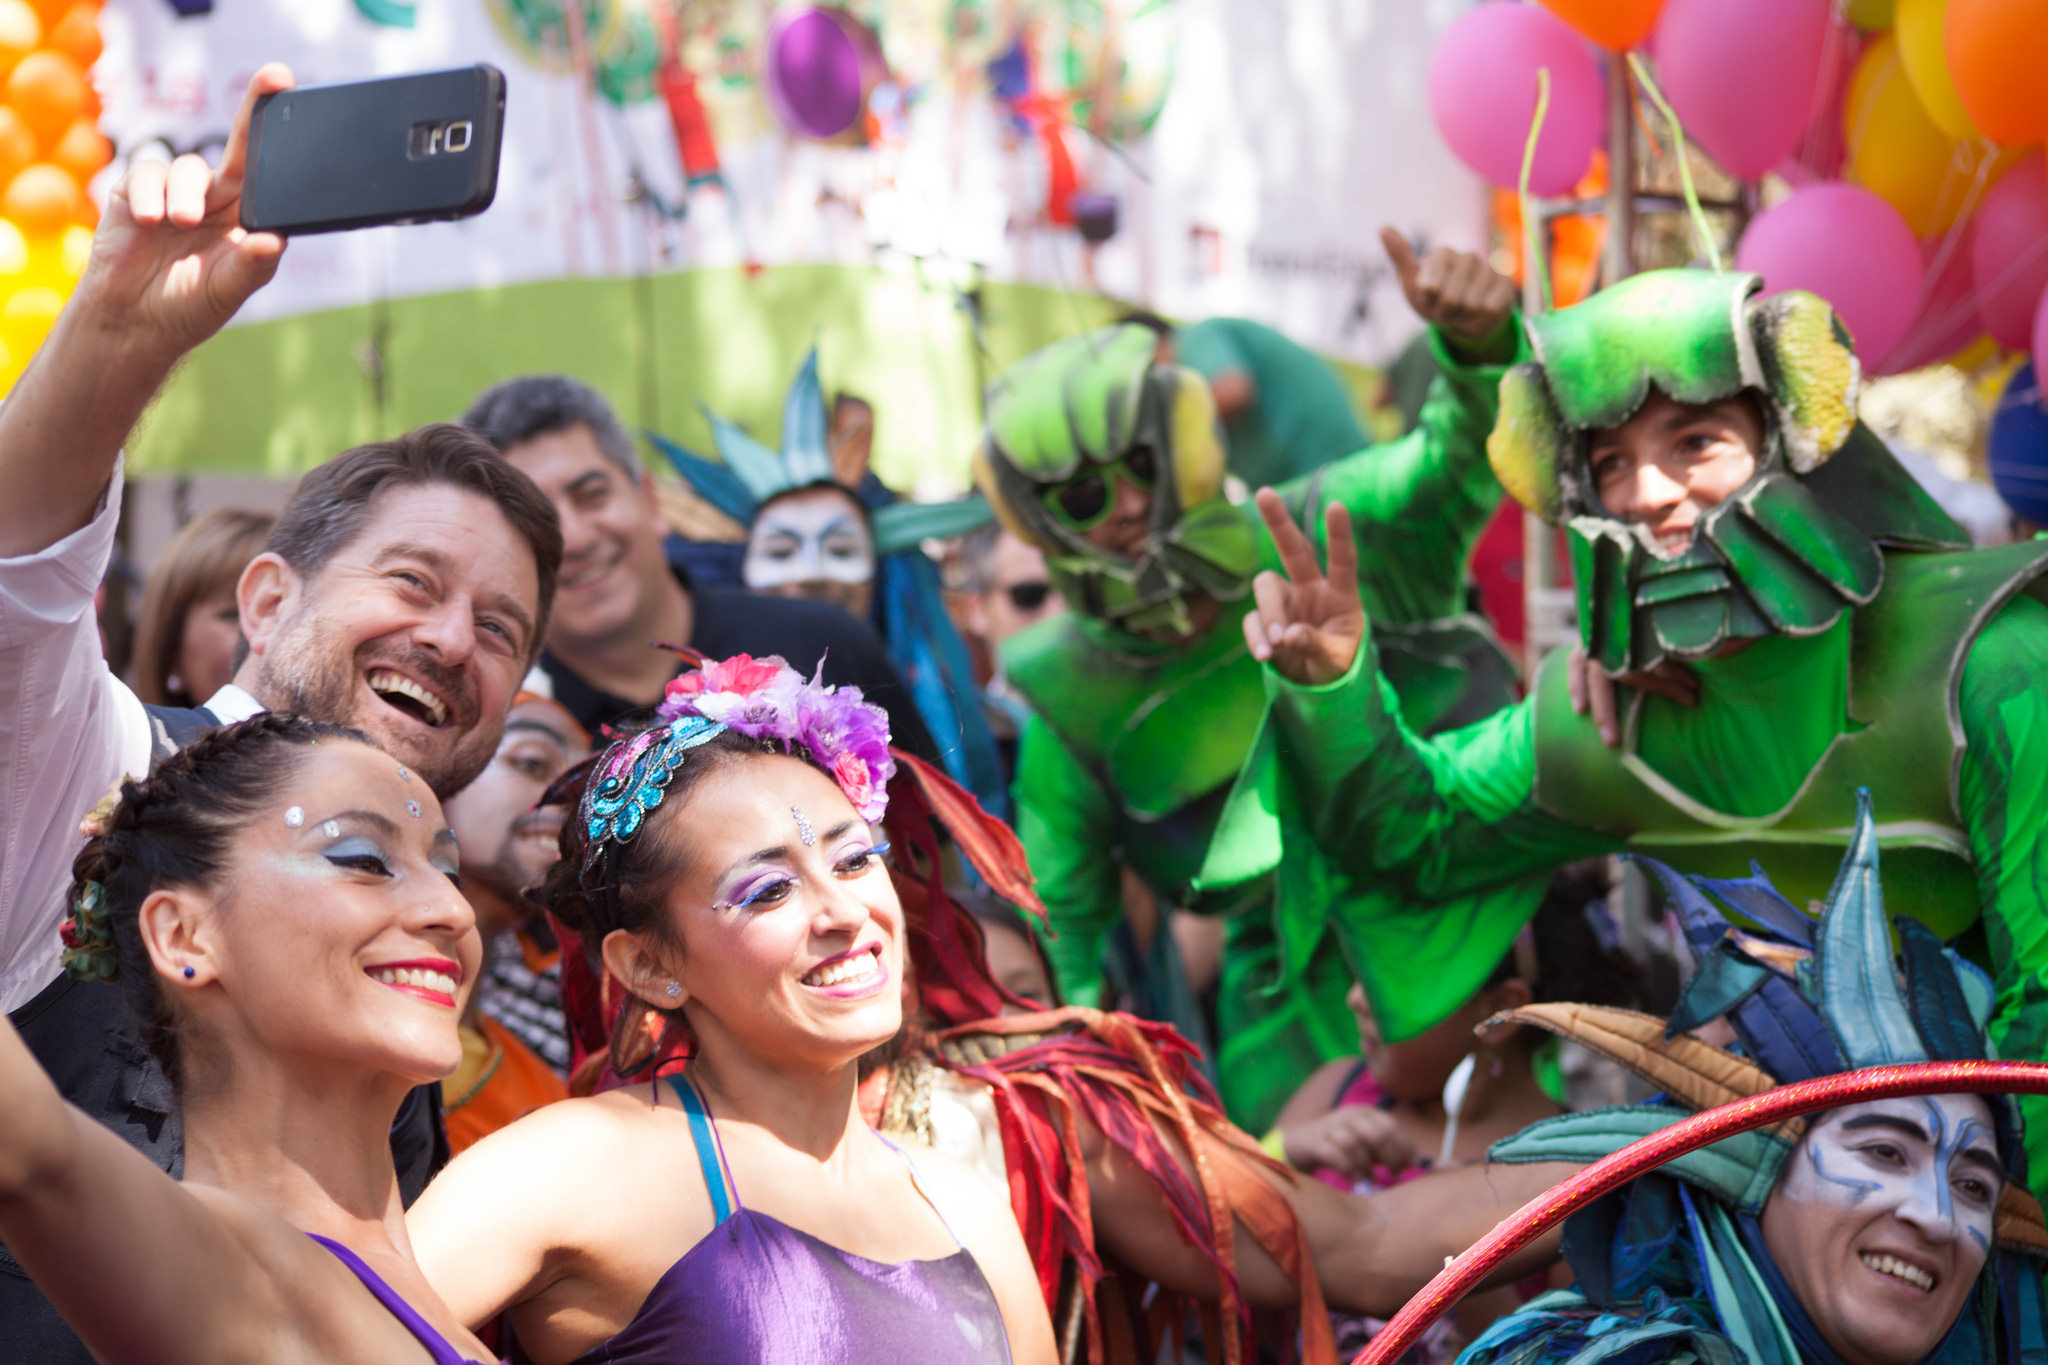 Intendente Orrego en Carnaval de Cultura Fosis del Programa “Verano para todos y todas”.